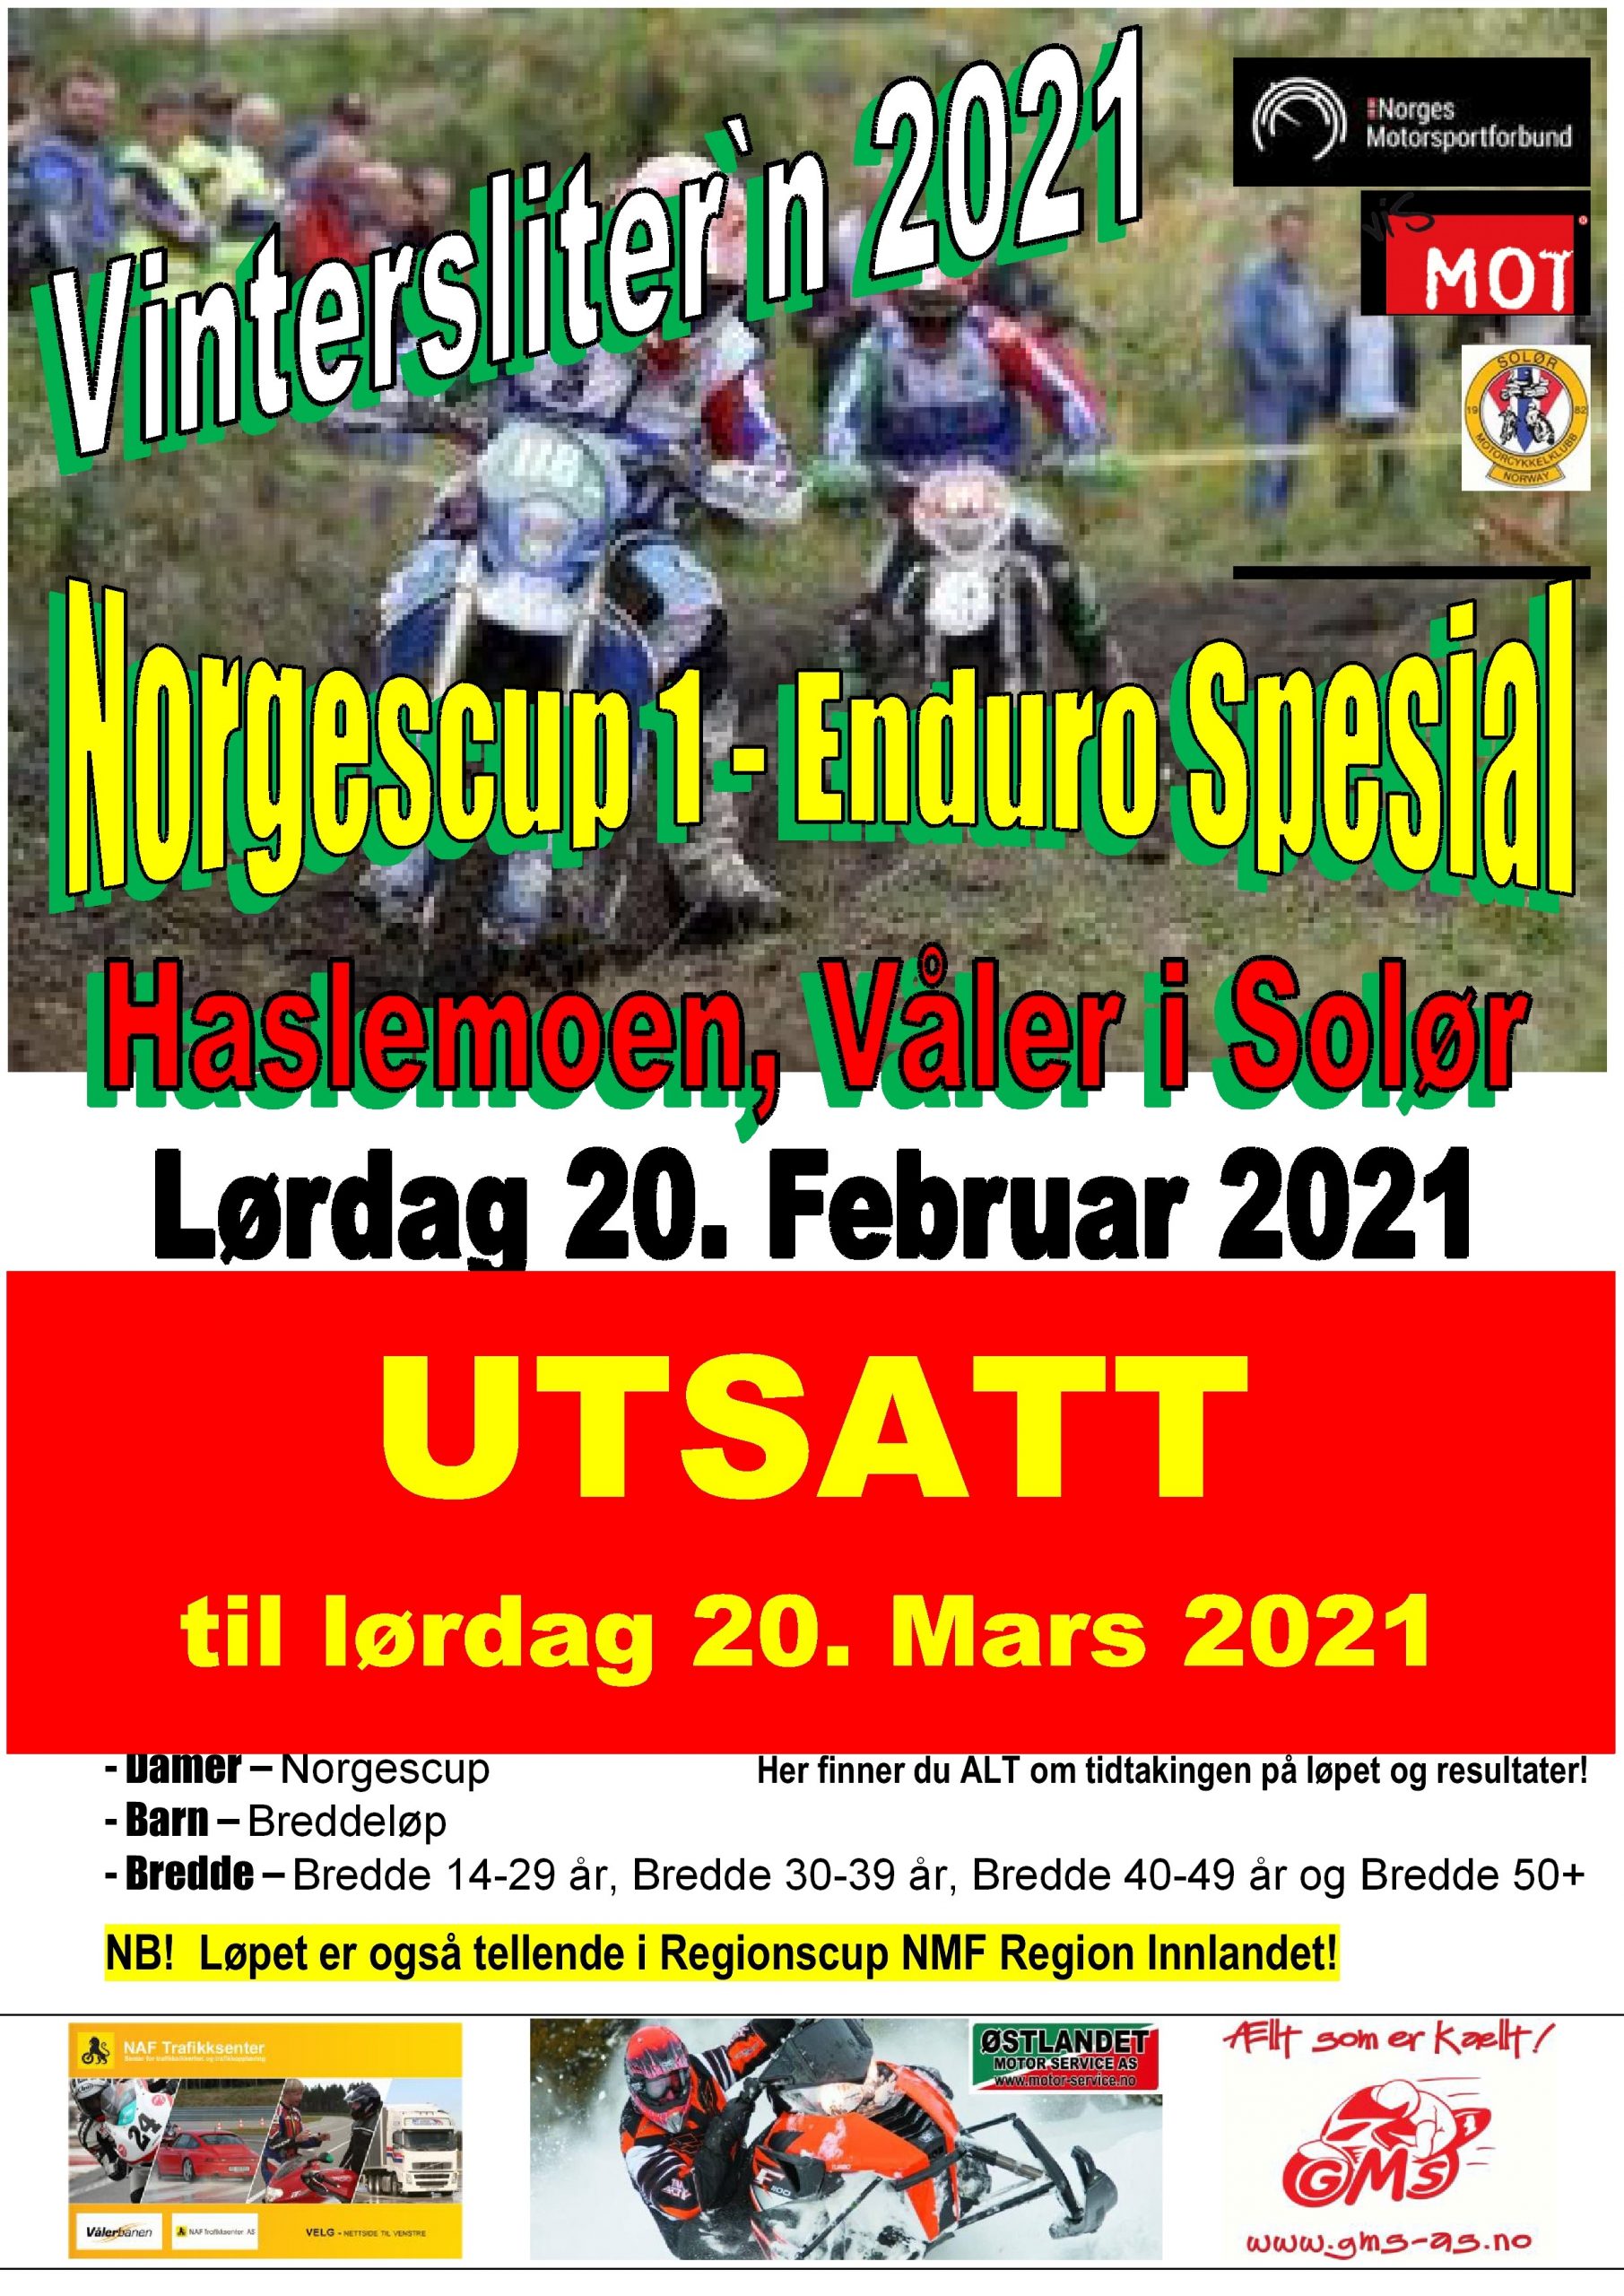 30 - Poster Vinterslitern 2021 - FEBRUAR - UTSATT